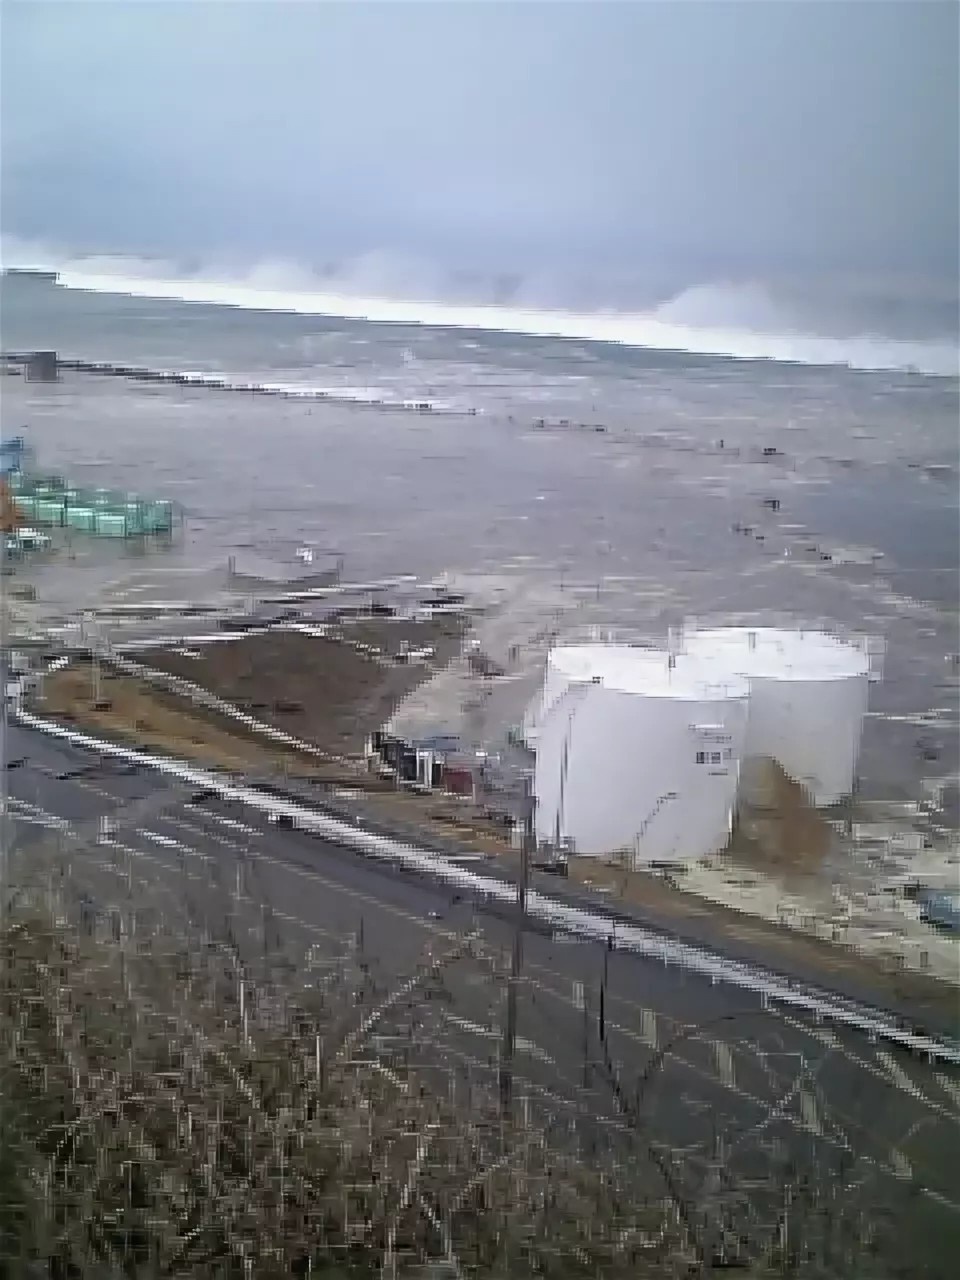 Непосредственной причиной аварии на АЭС «Фукусима-1» стало мощное цунами, возникшее в результате крупнейшего в истории Японии землетрясения.